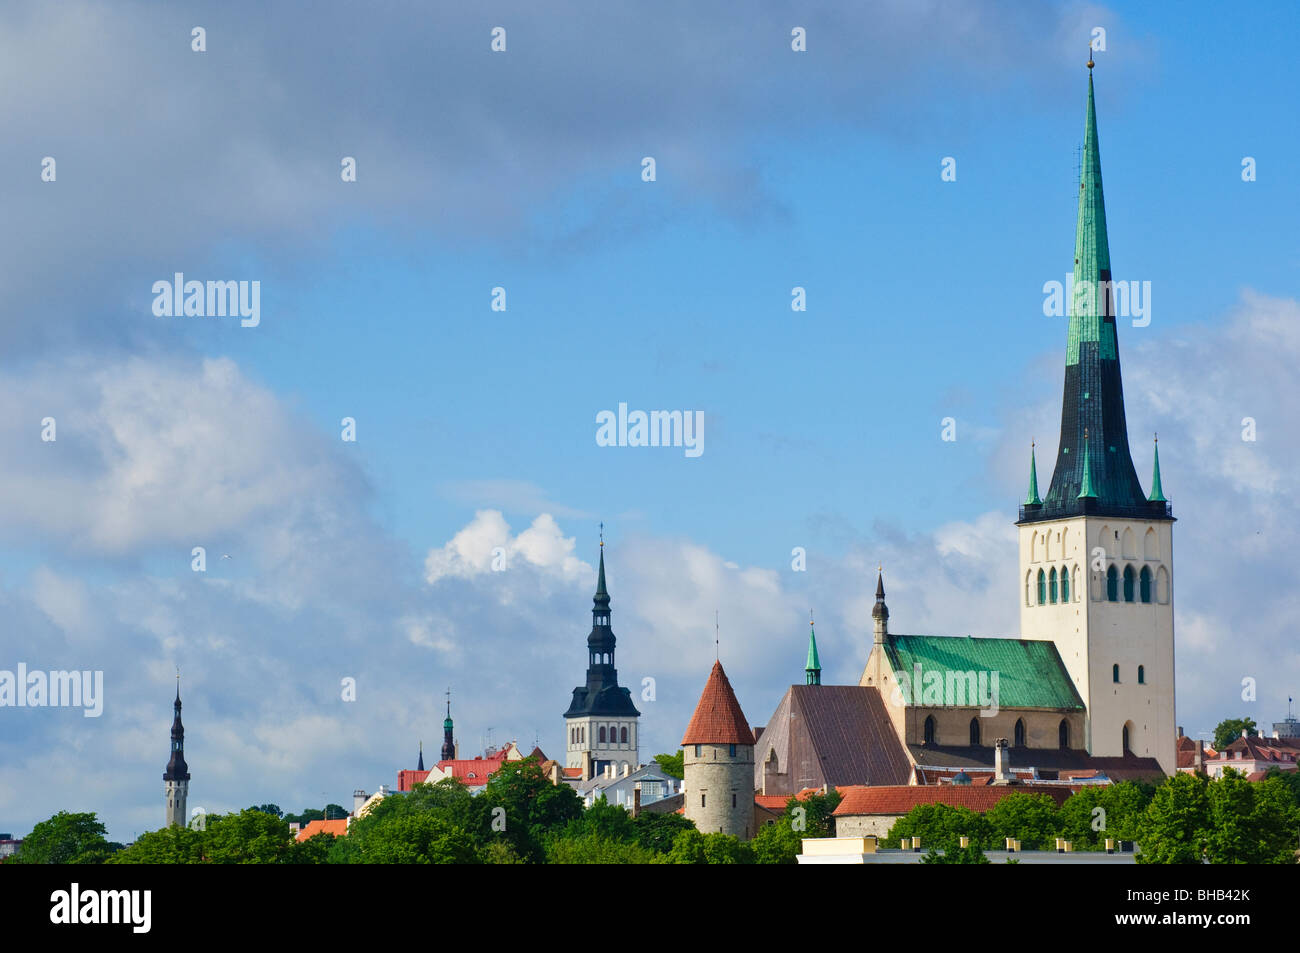 The 124m tall spire of Oleviste kirik(St Olav’s church) dominates the Old Town skyline in Tallinn, Estonia. Stock Photo